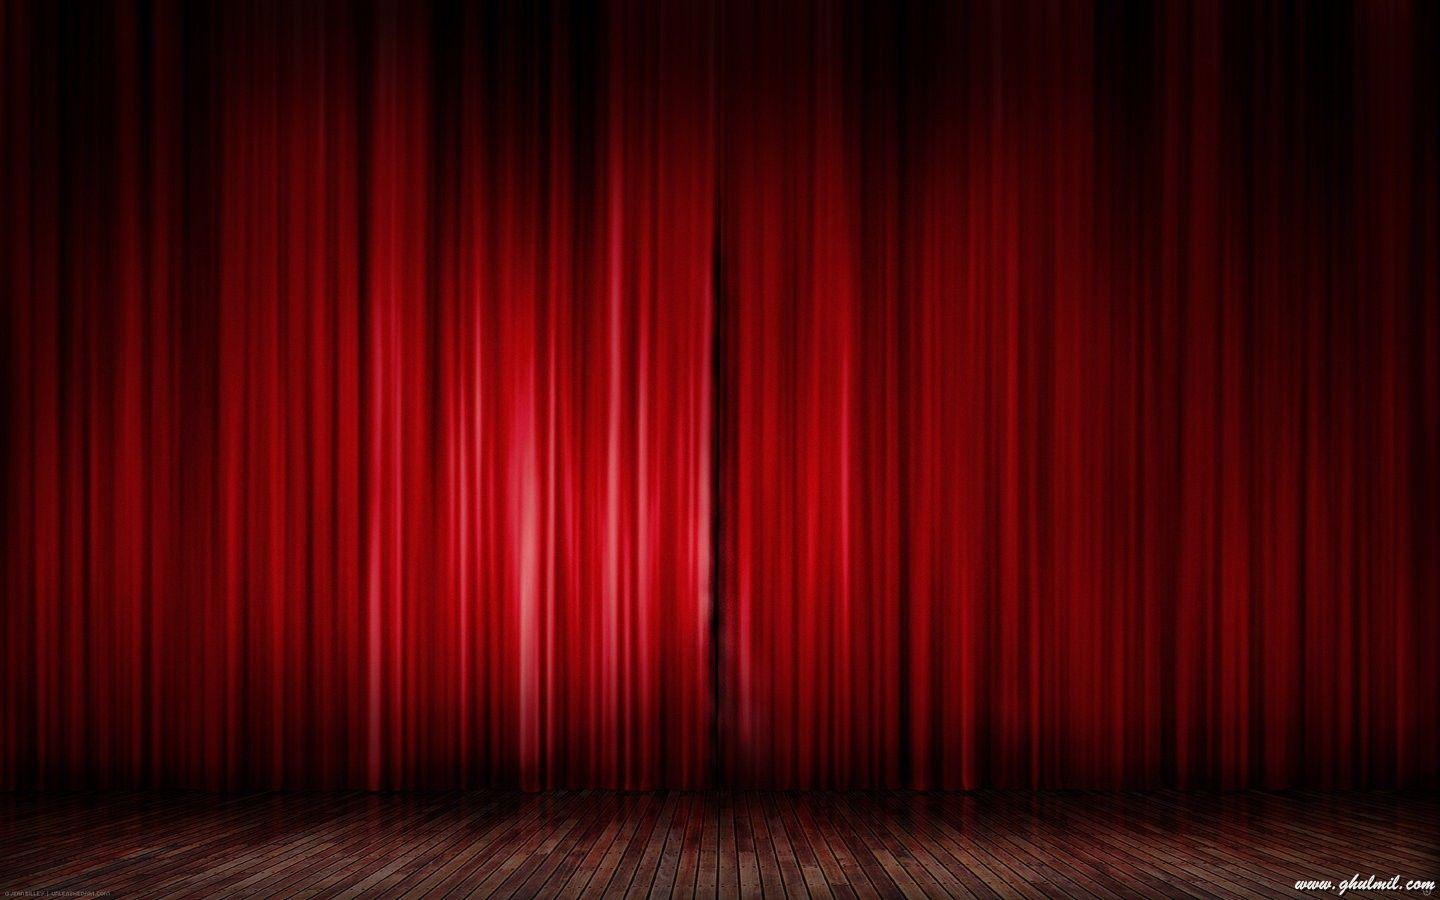 Rèm đỏ 1440x900 năm 2019. Rèm đỏ, Rèm sân khấu, Màu đỏ